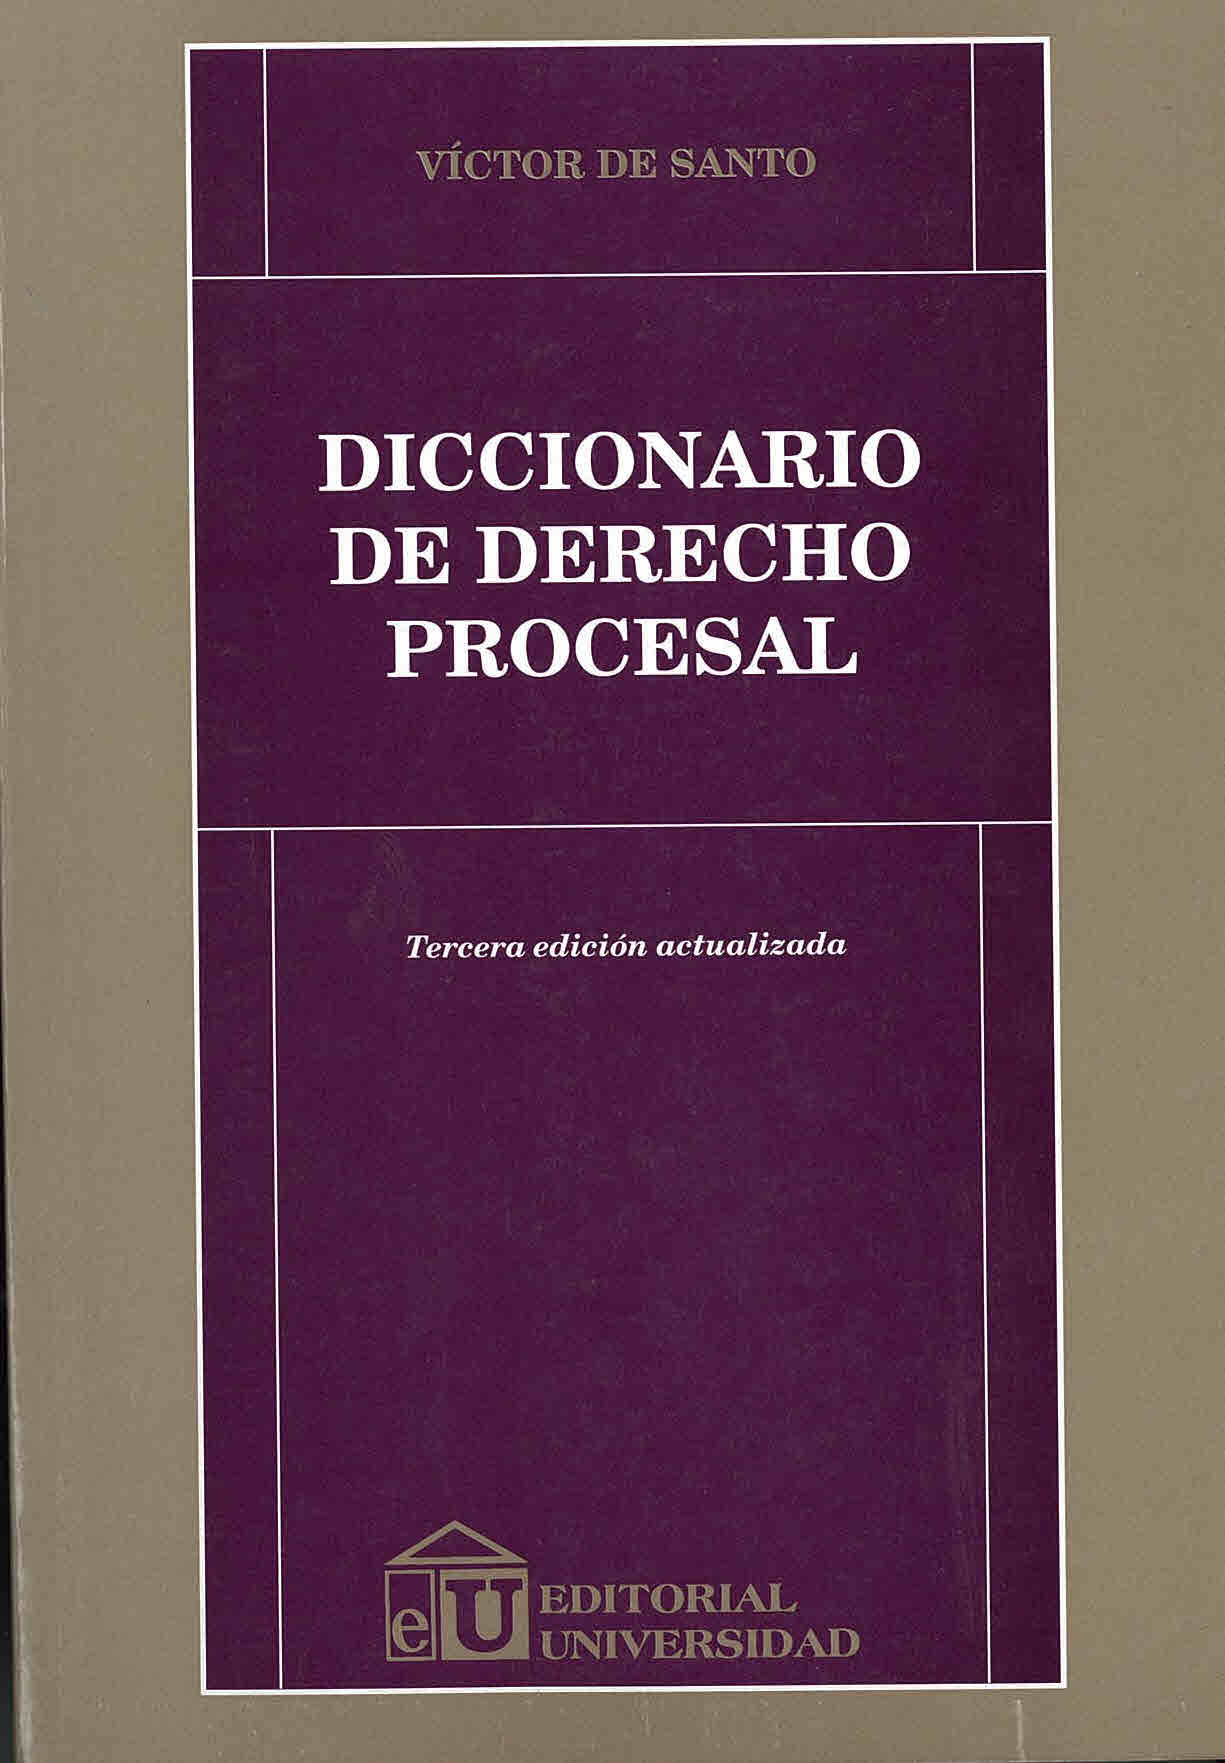 Diccionario de derecho procesal